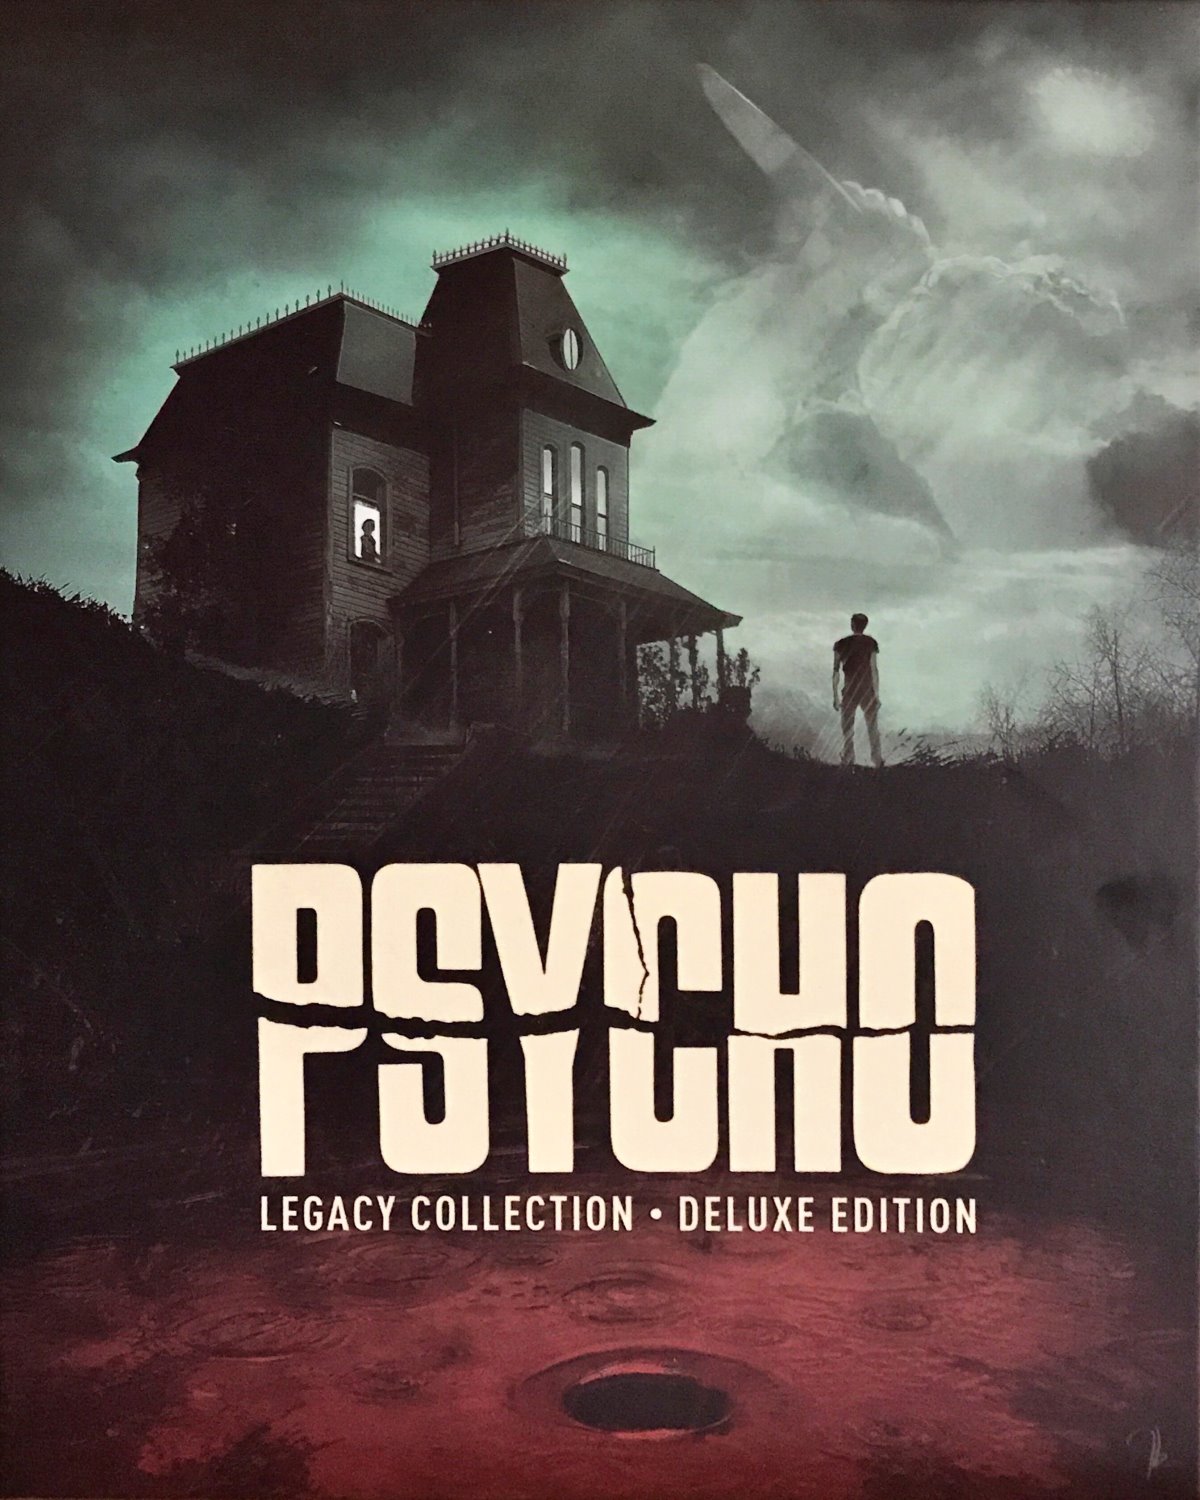 Cover - Psycho II.jpg